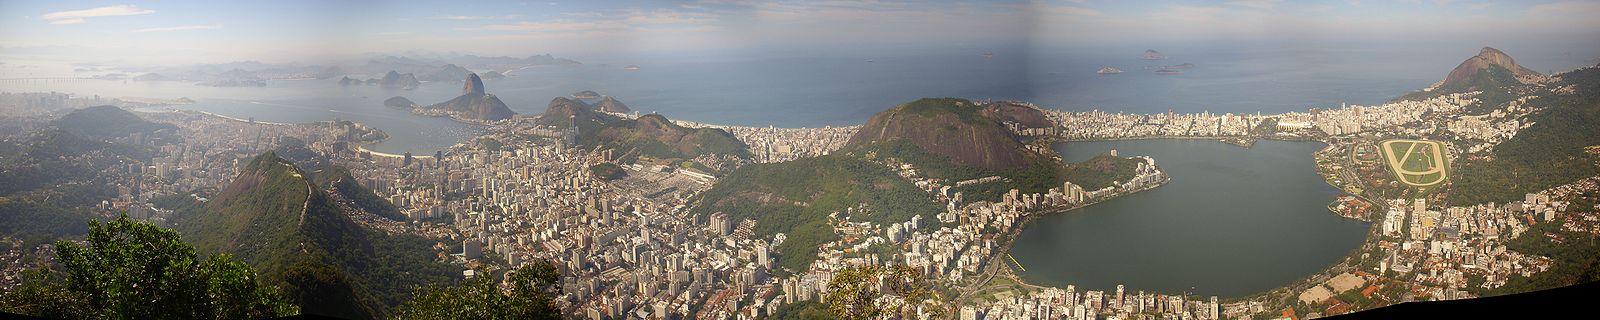 Blick vom Corcovado über das Zentrum, Botafogo, den Zuckerhut, Copacabana und Ipanema